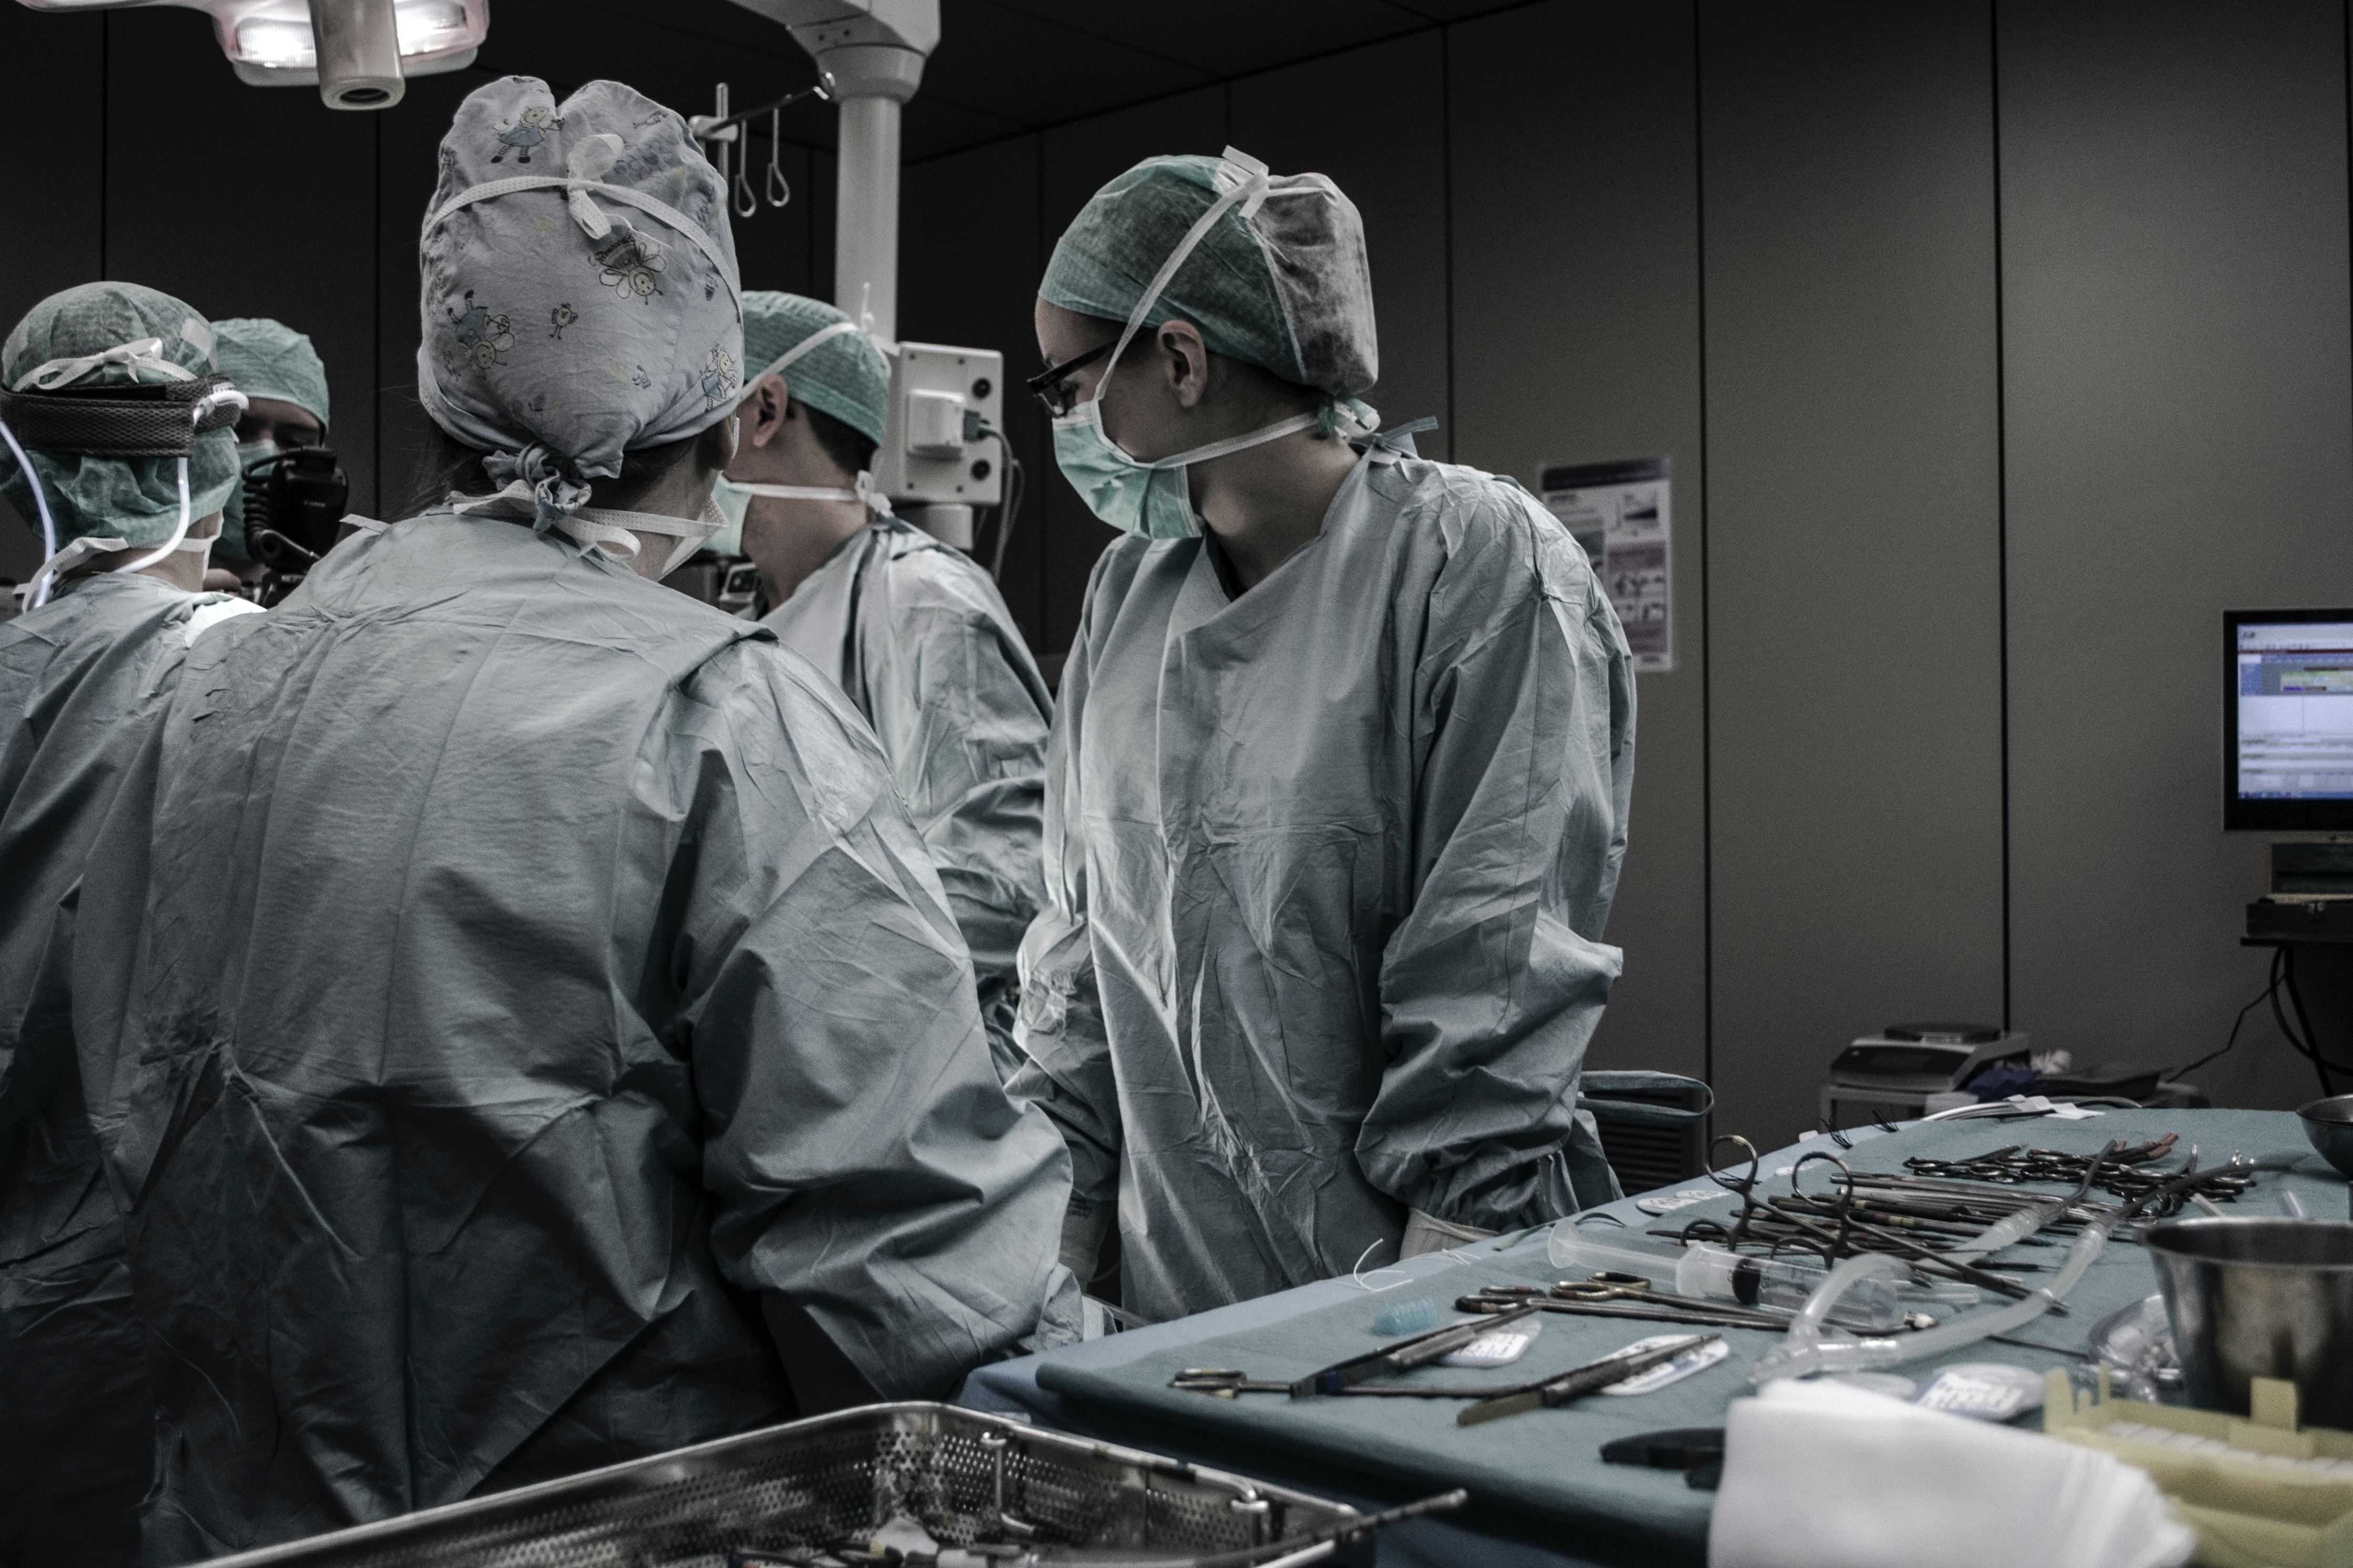 Médicos son señalados de haberle extraído un riñón a un paciente a quien le dieron un diagnóstico falso. (Foto de referencia Prensa Libre: Unsplash)